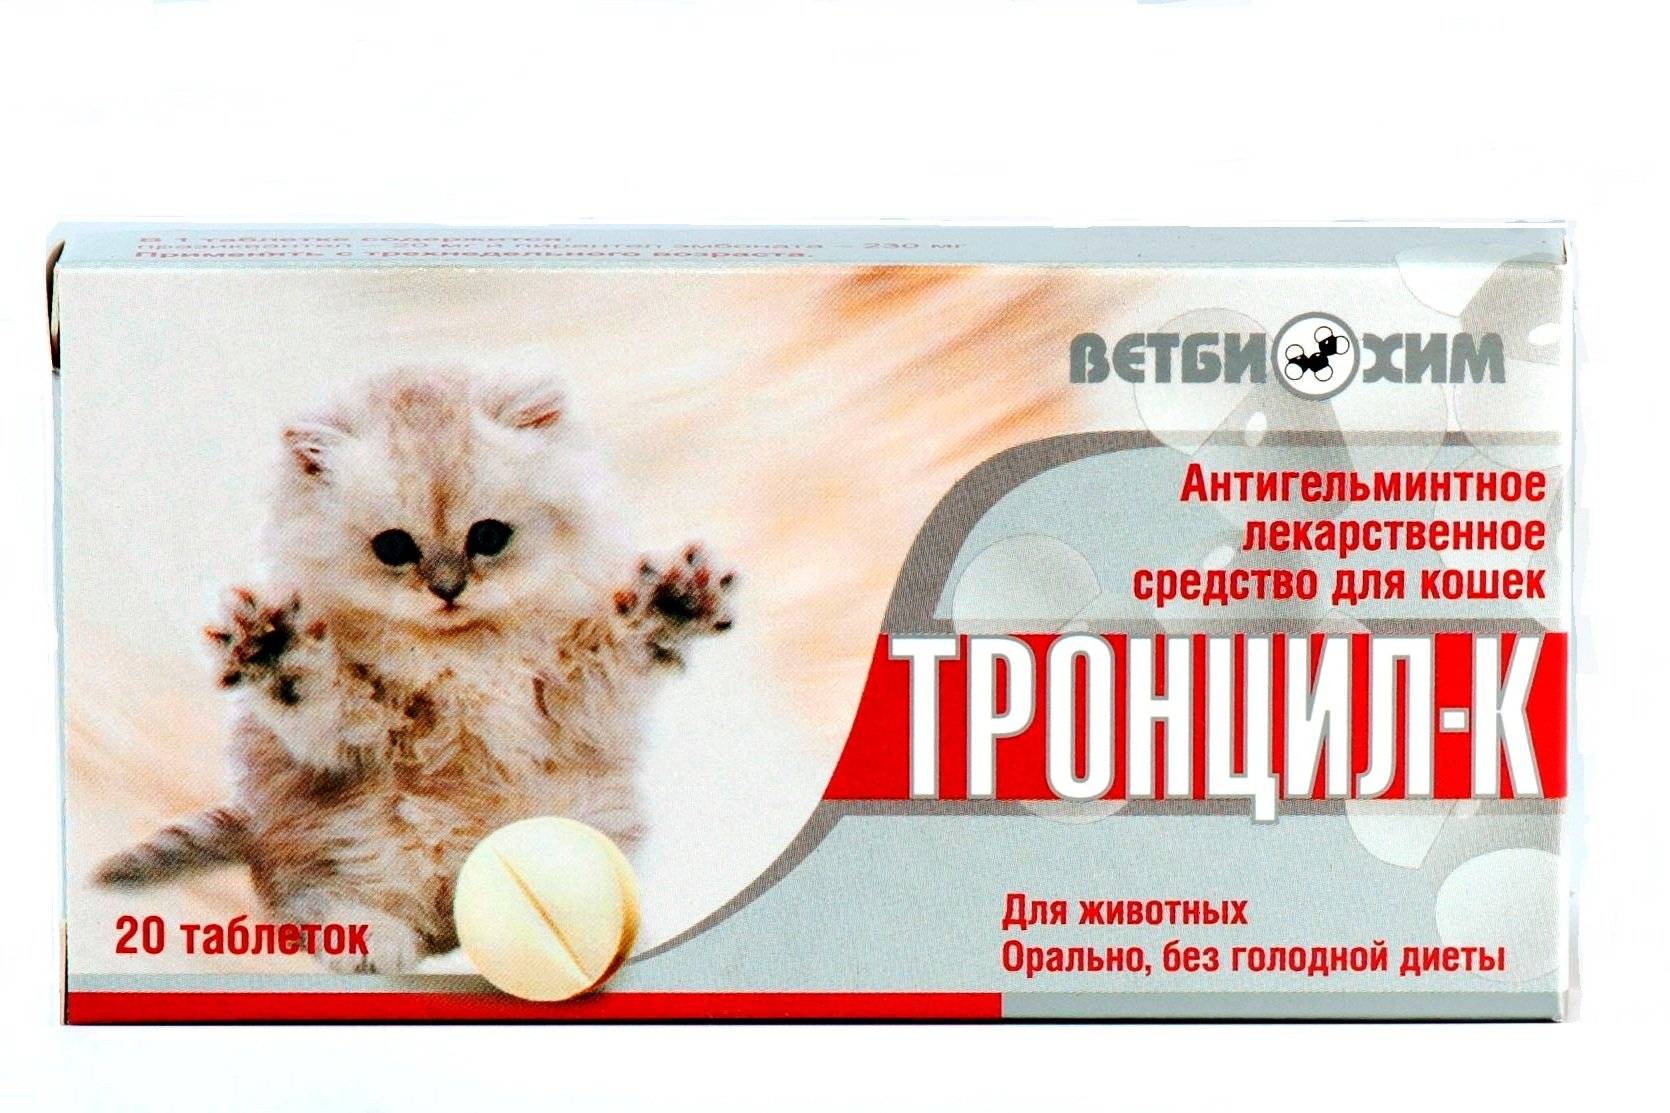 Тронцил для собак: инструкция по применению для собак, побочные эффекты и противопоказания - kotiko.ru